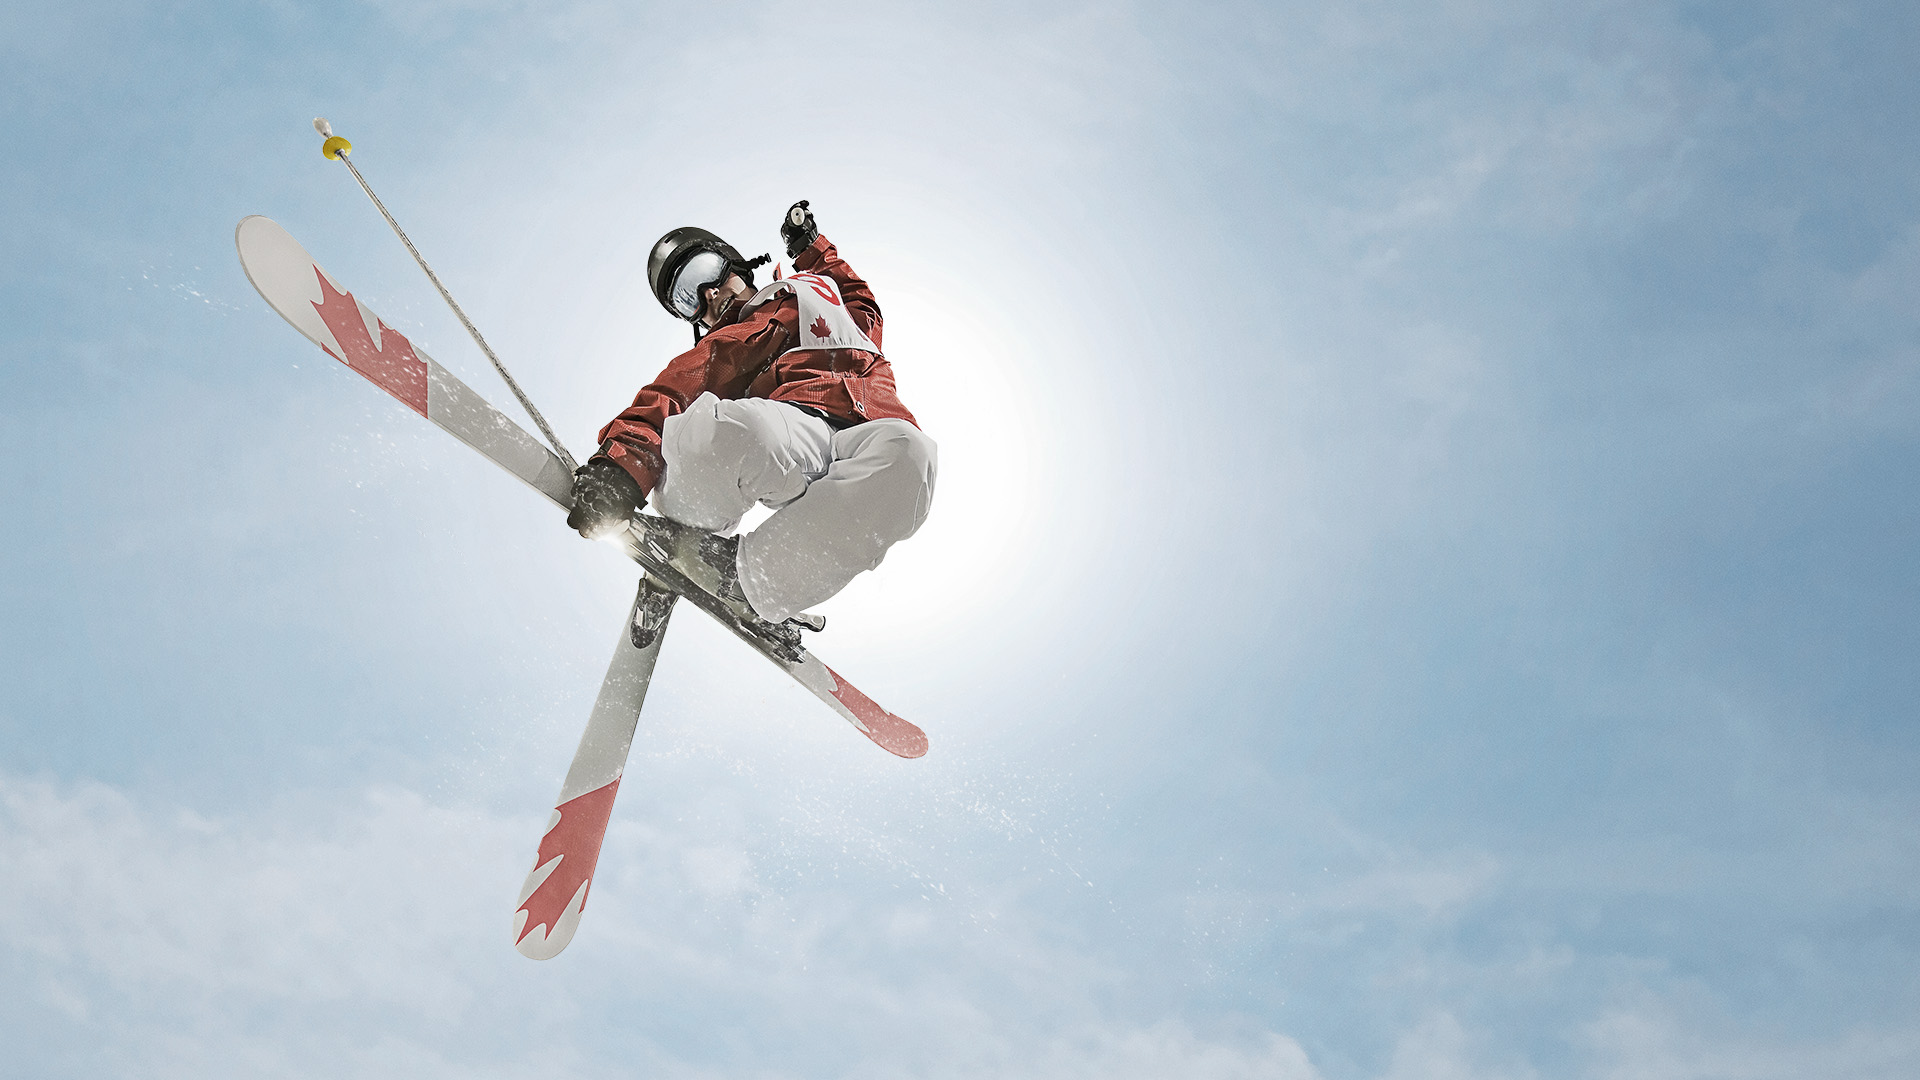 Coke Winter Olympics Snowboarding And Skiing Heavy